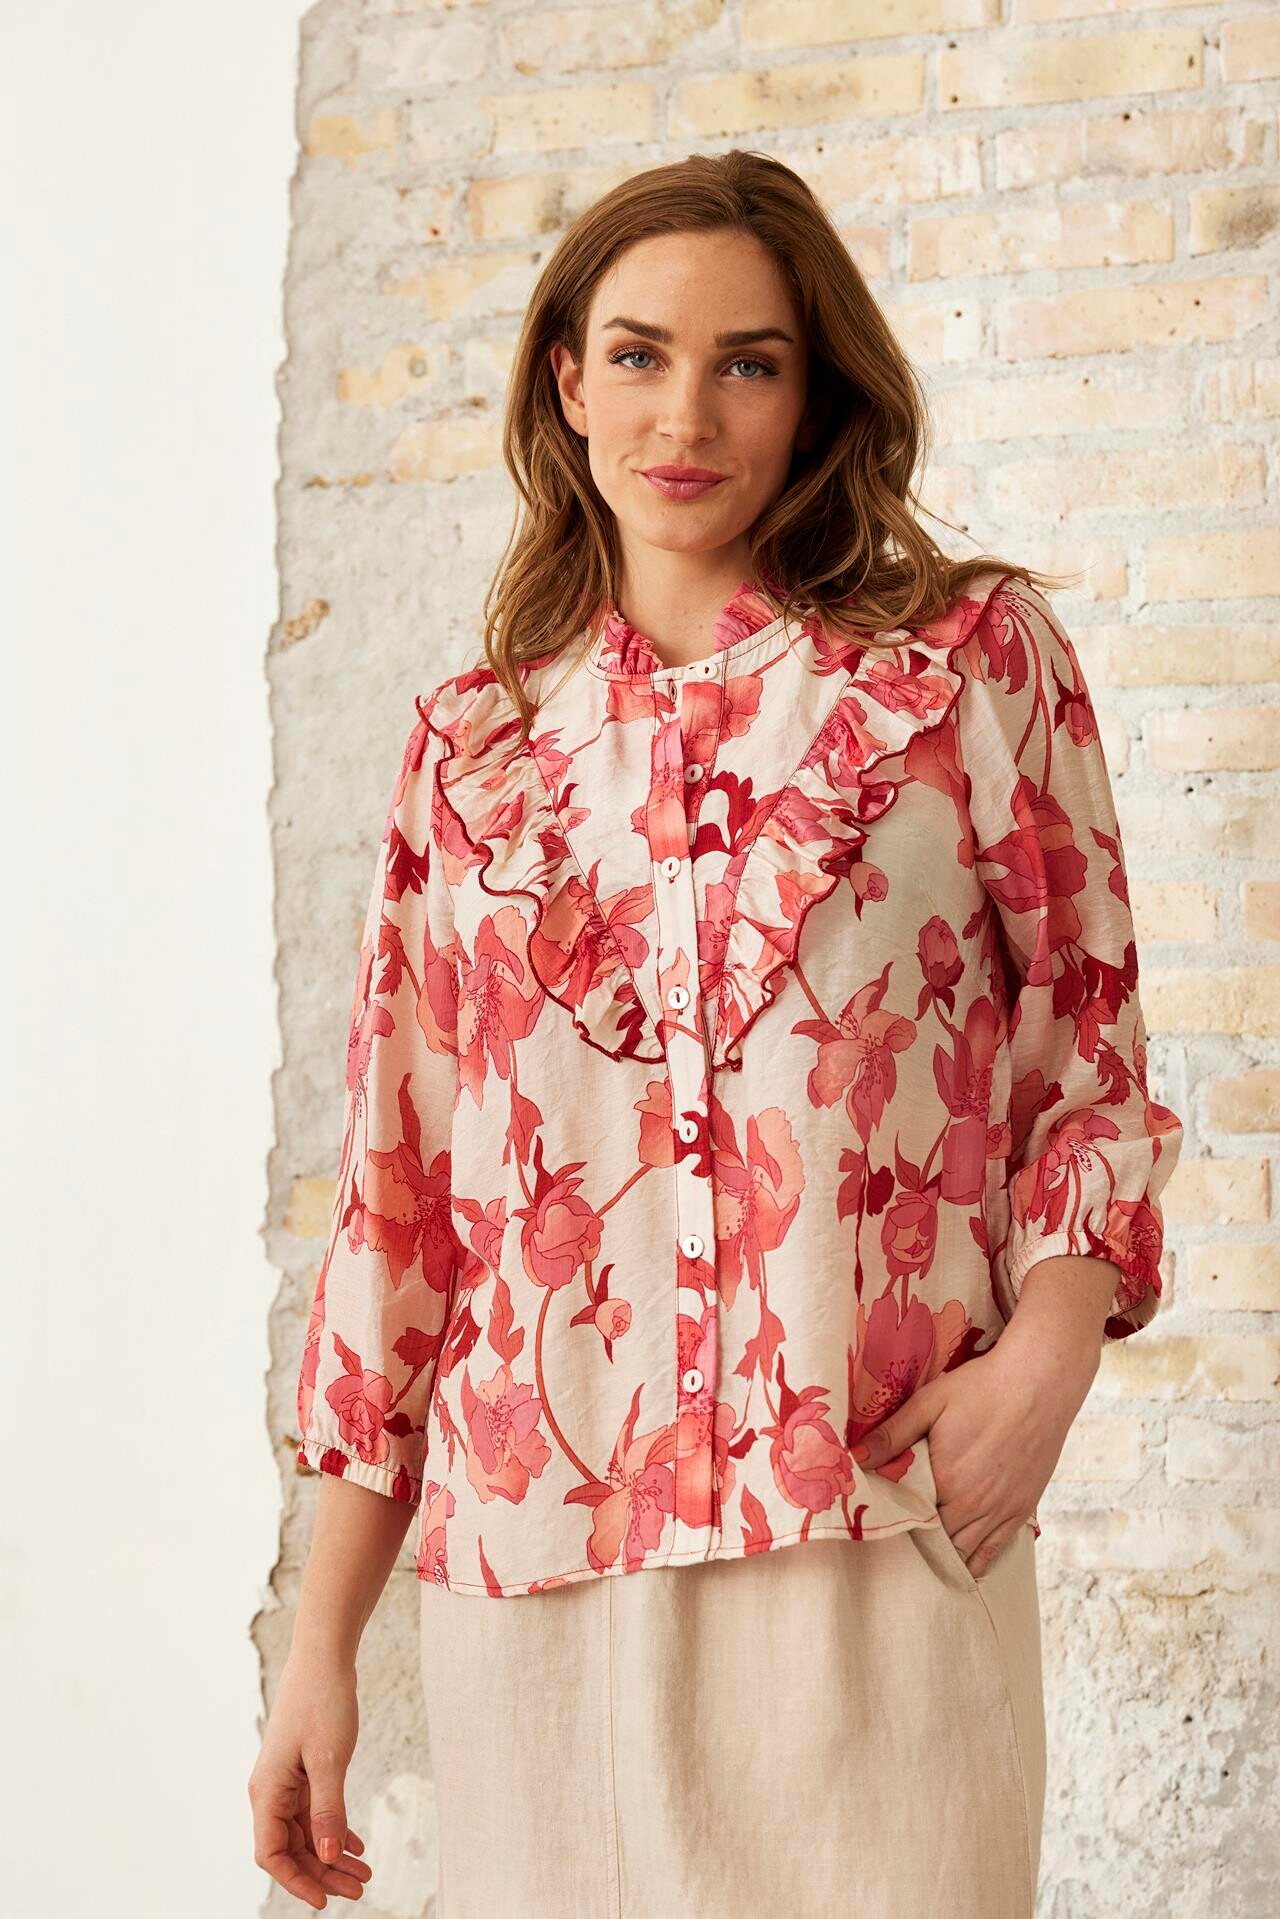 Se IN FRONT Summer Skjorte, Farve: Coral Rose, Størrelse: M, Dame hos Infront Women